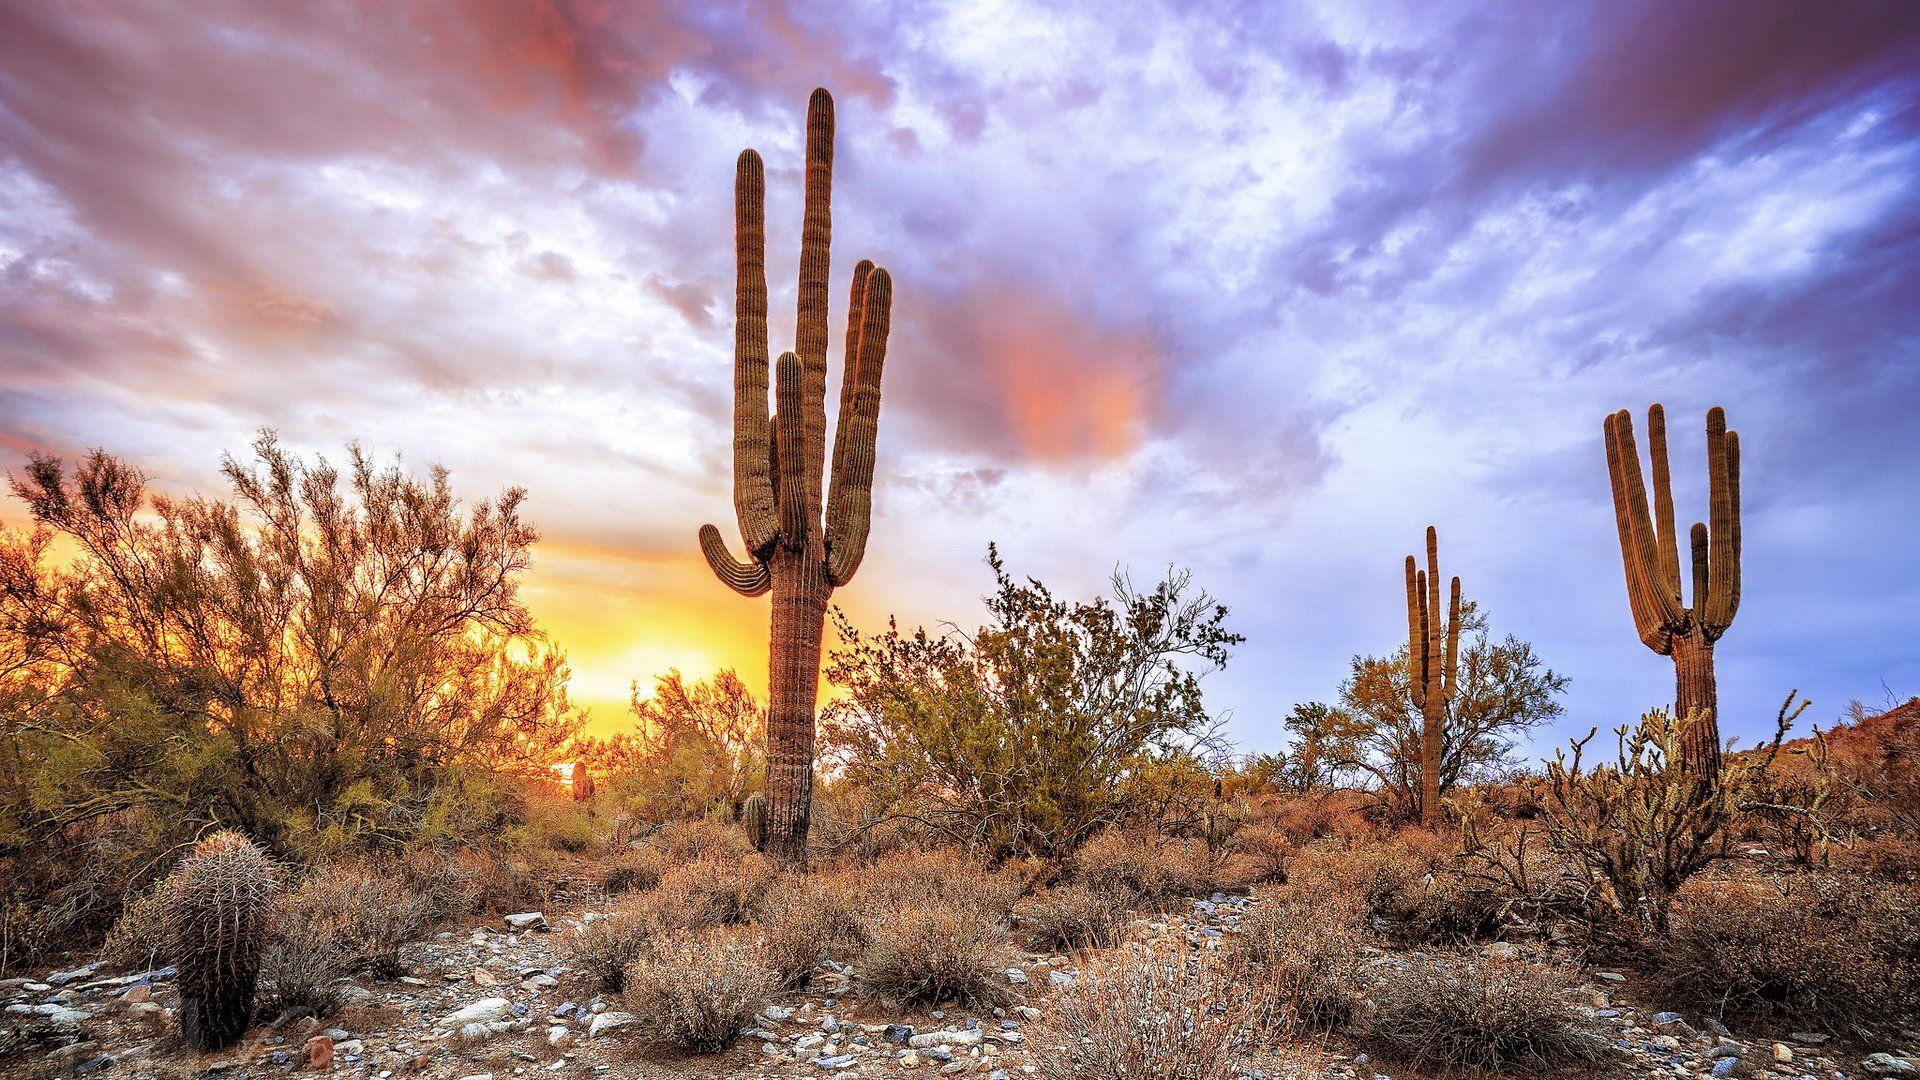 Sonoran Desert Wallpapers - Top Free Sonoran Desert Backgrounds ...